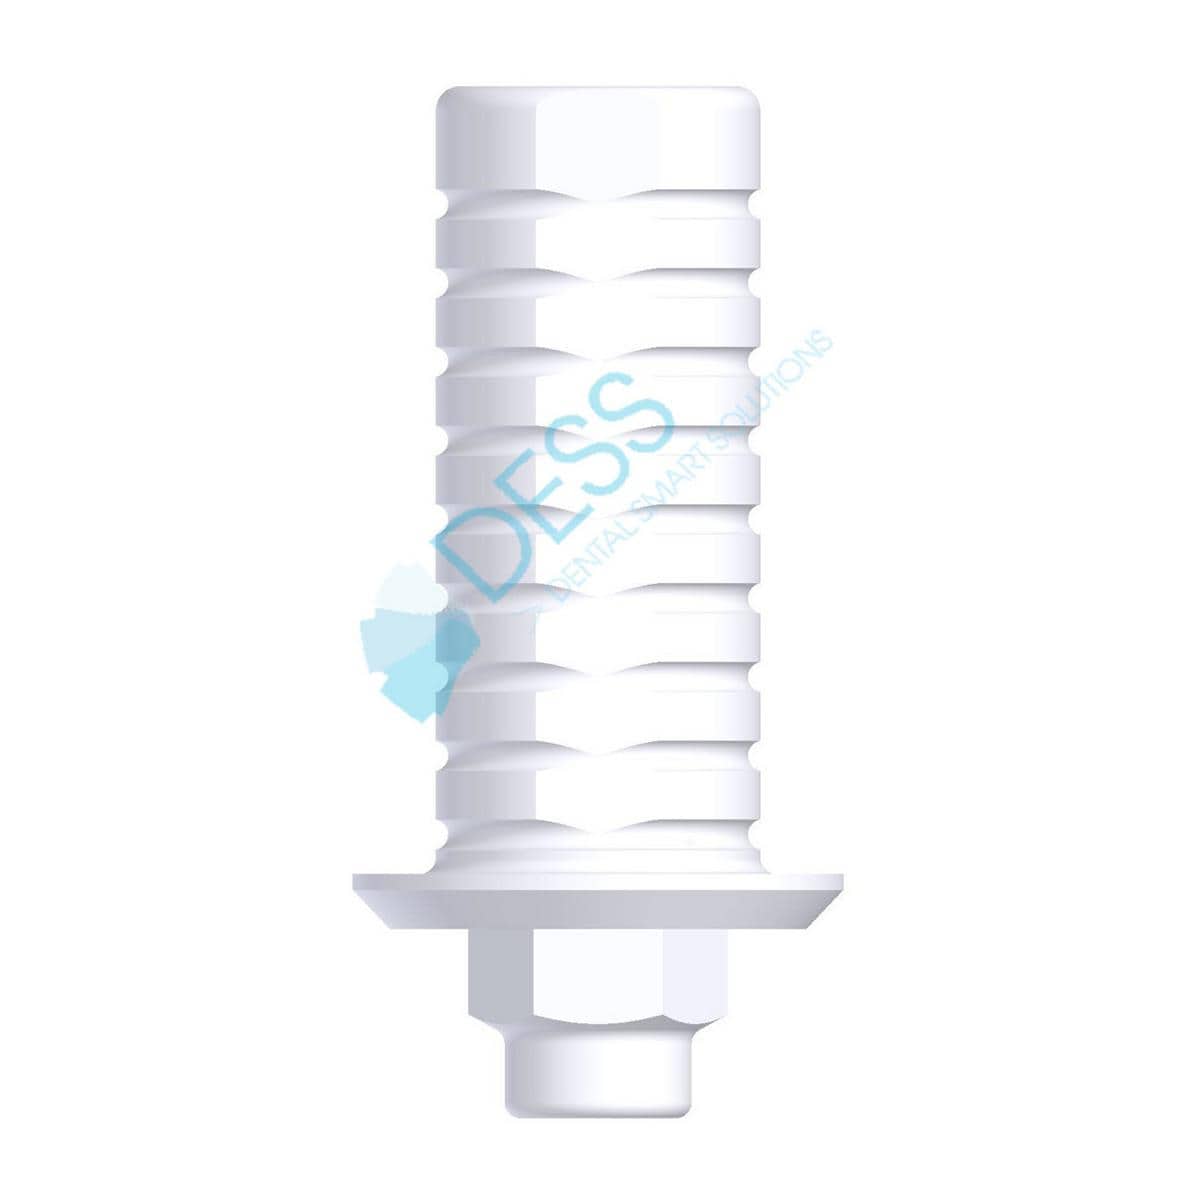 Kunststoffzylinder - kompatibel mit 3i® Certain® - WP Ø 5,0 mm, mit Rotationsschutz, Packung 1 Stück